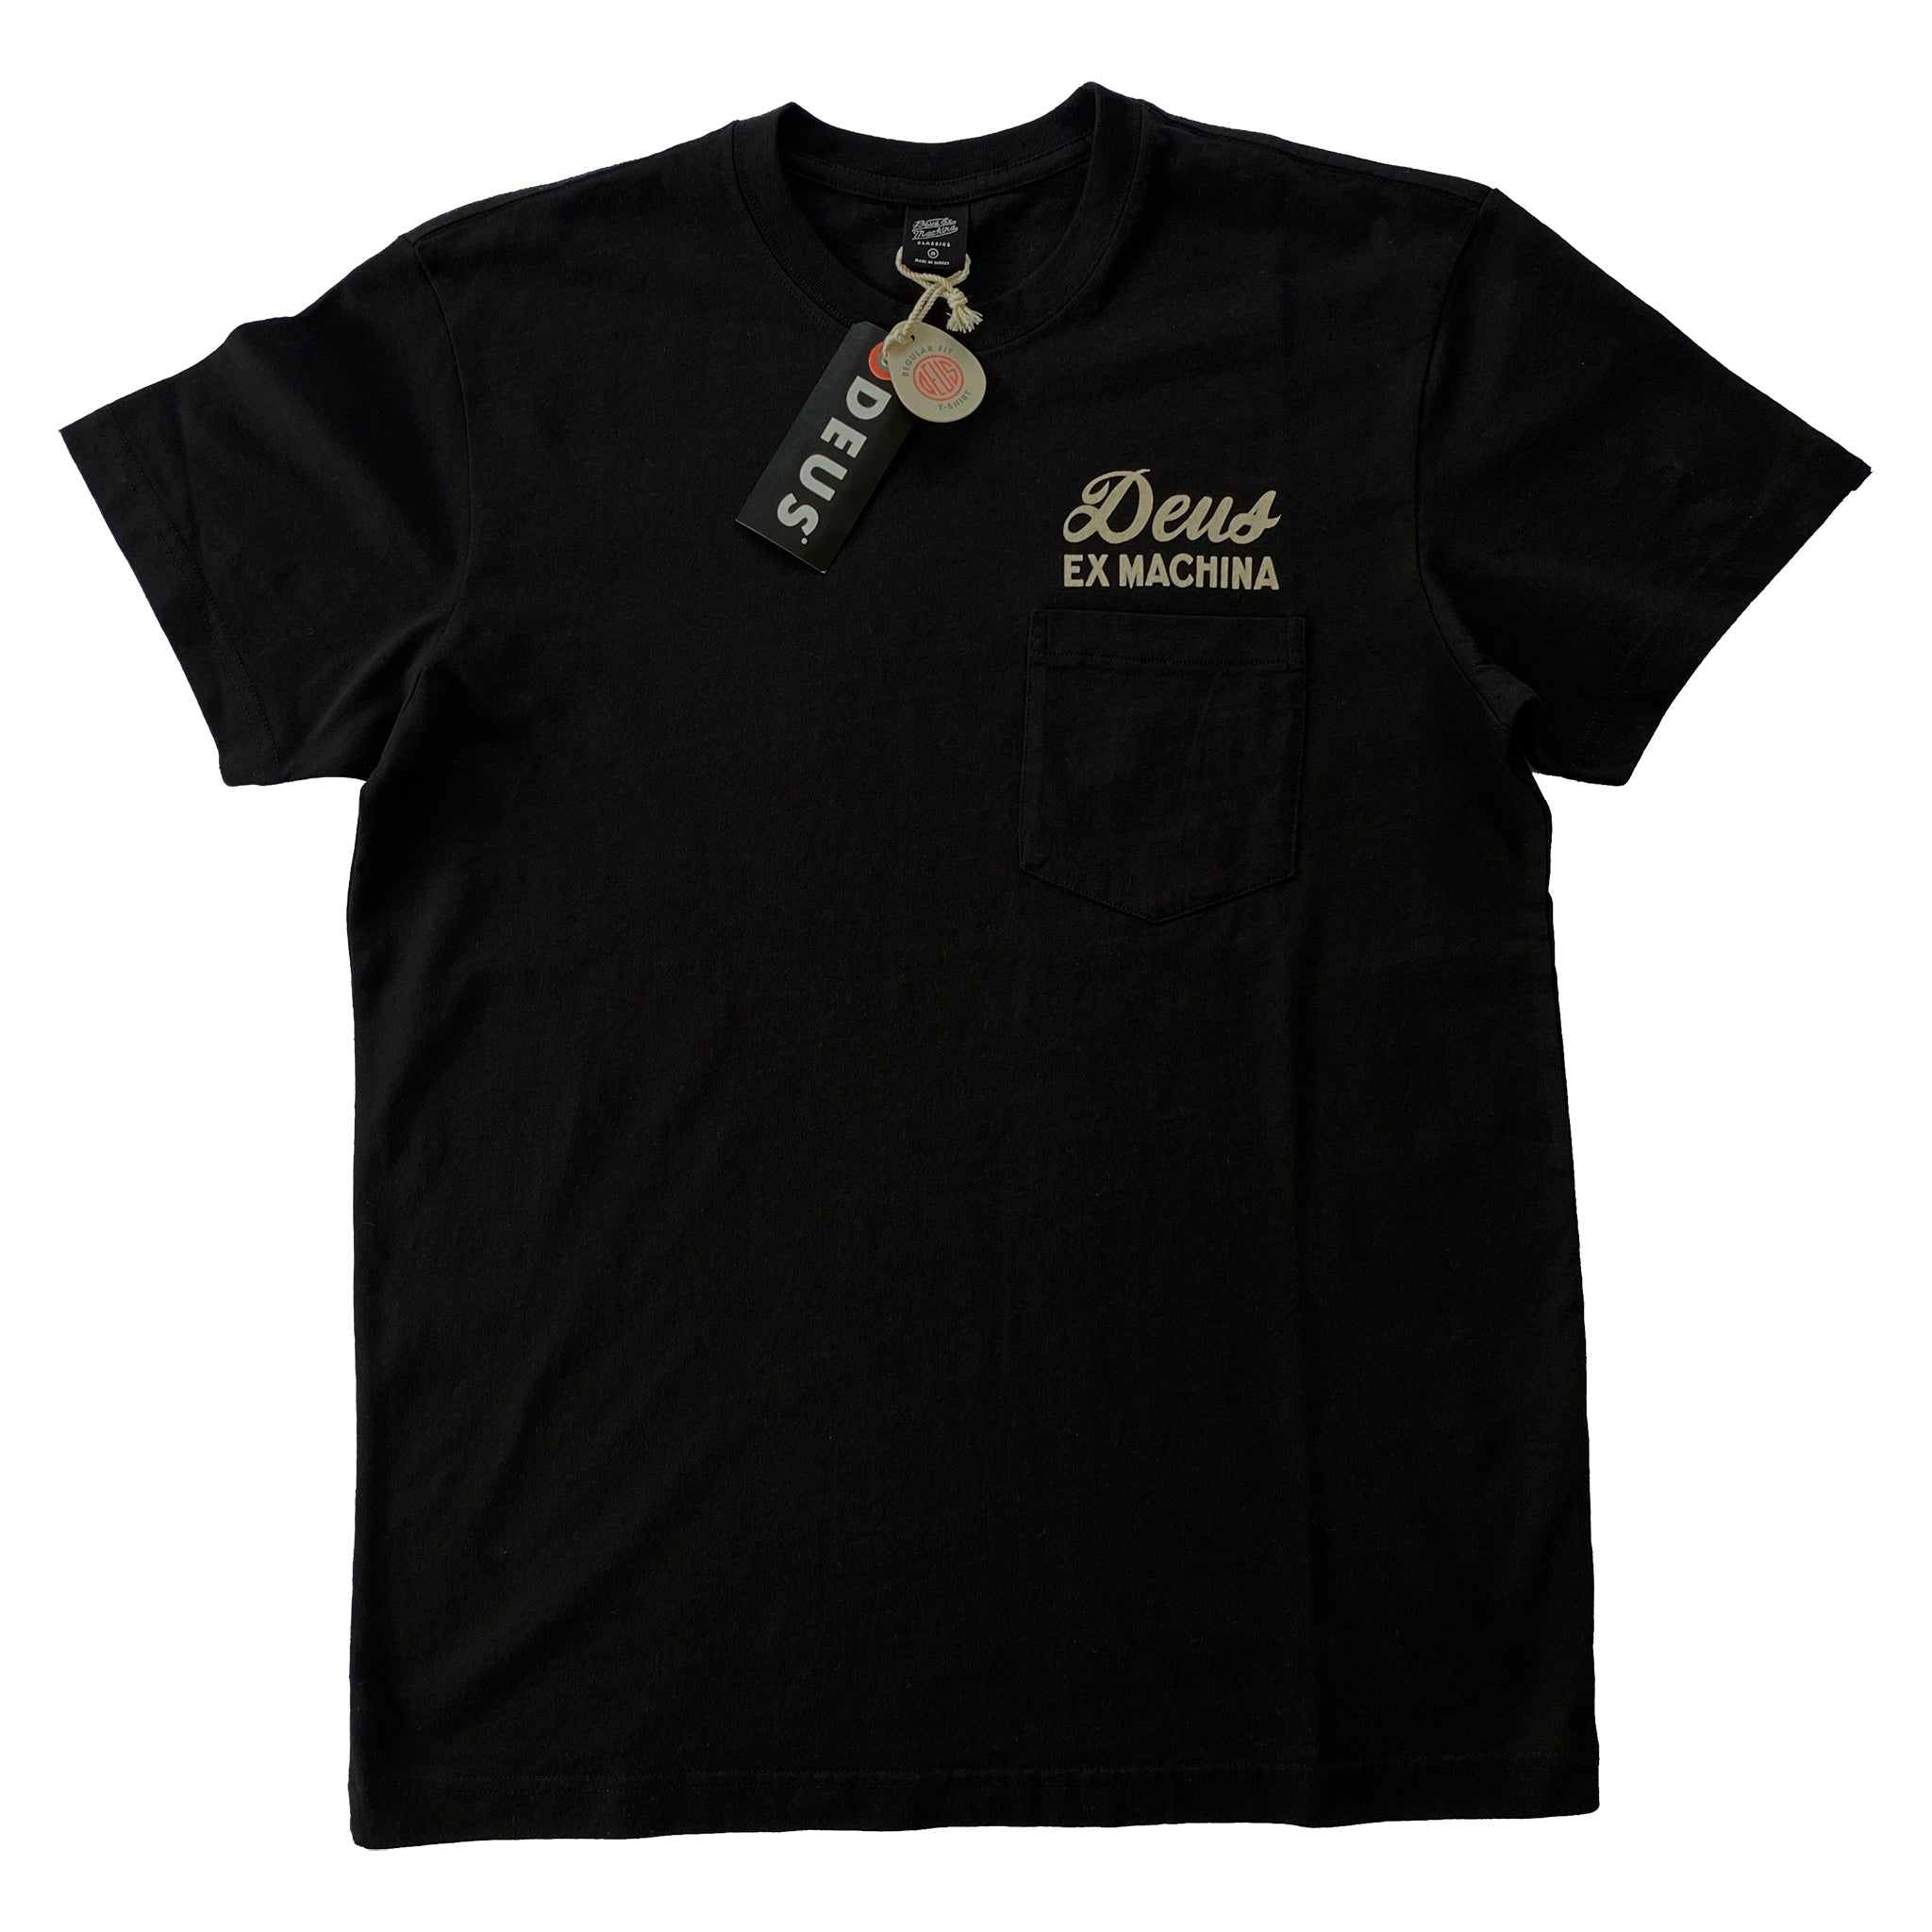 Camiseta Deus Ex Machina Venice Address